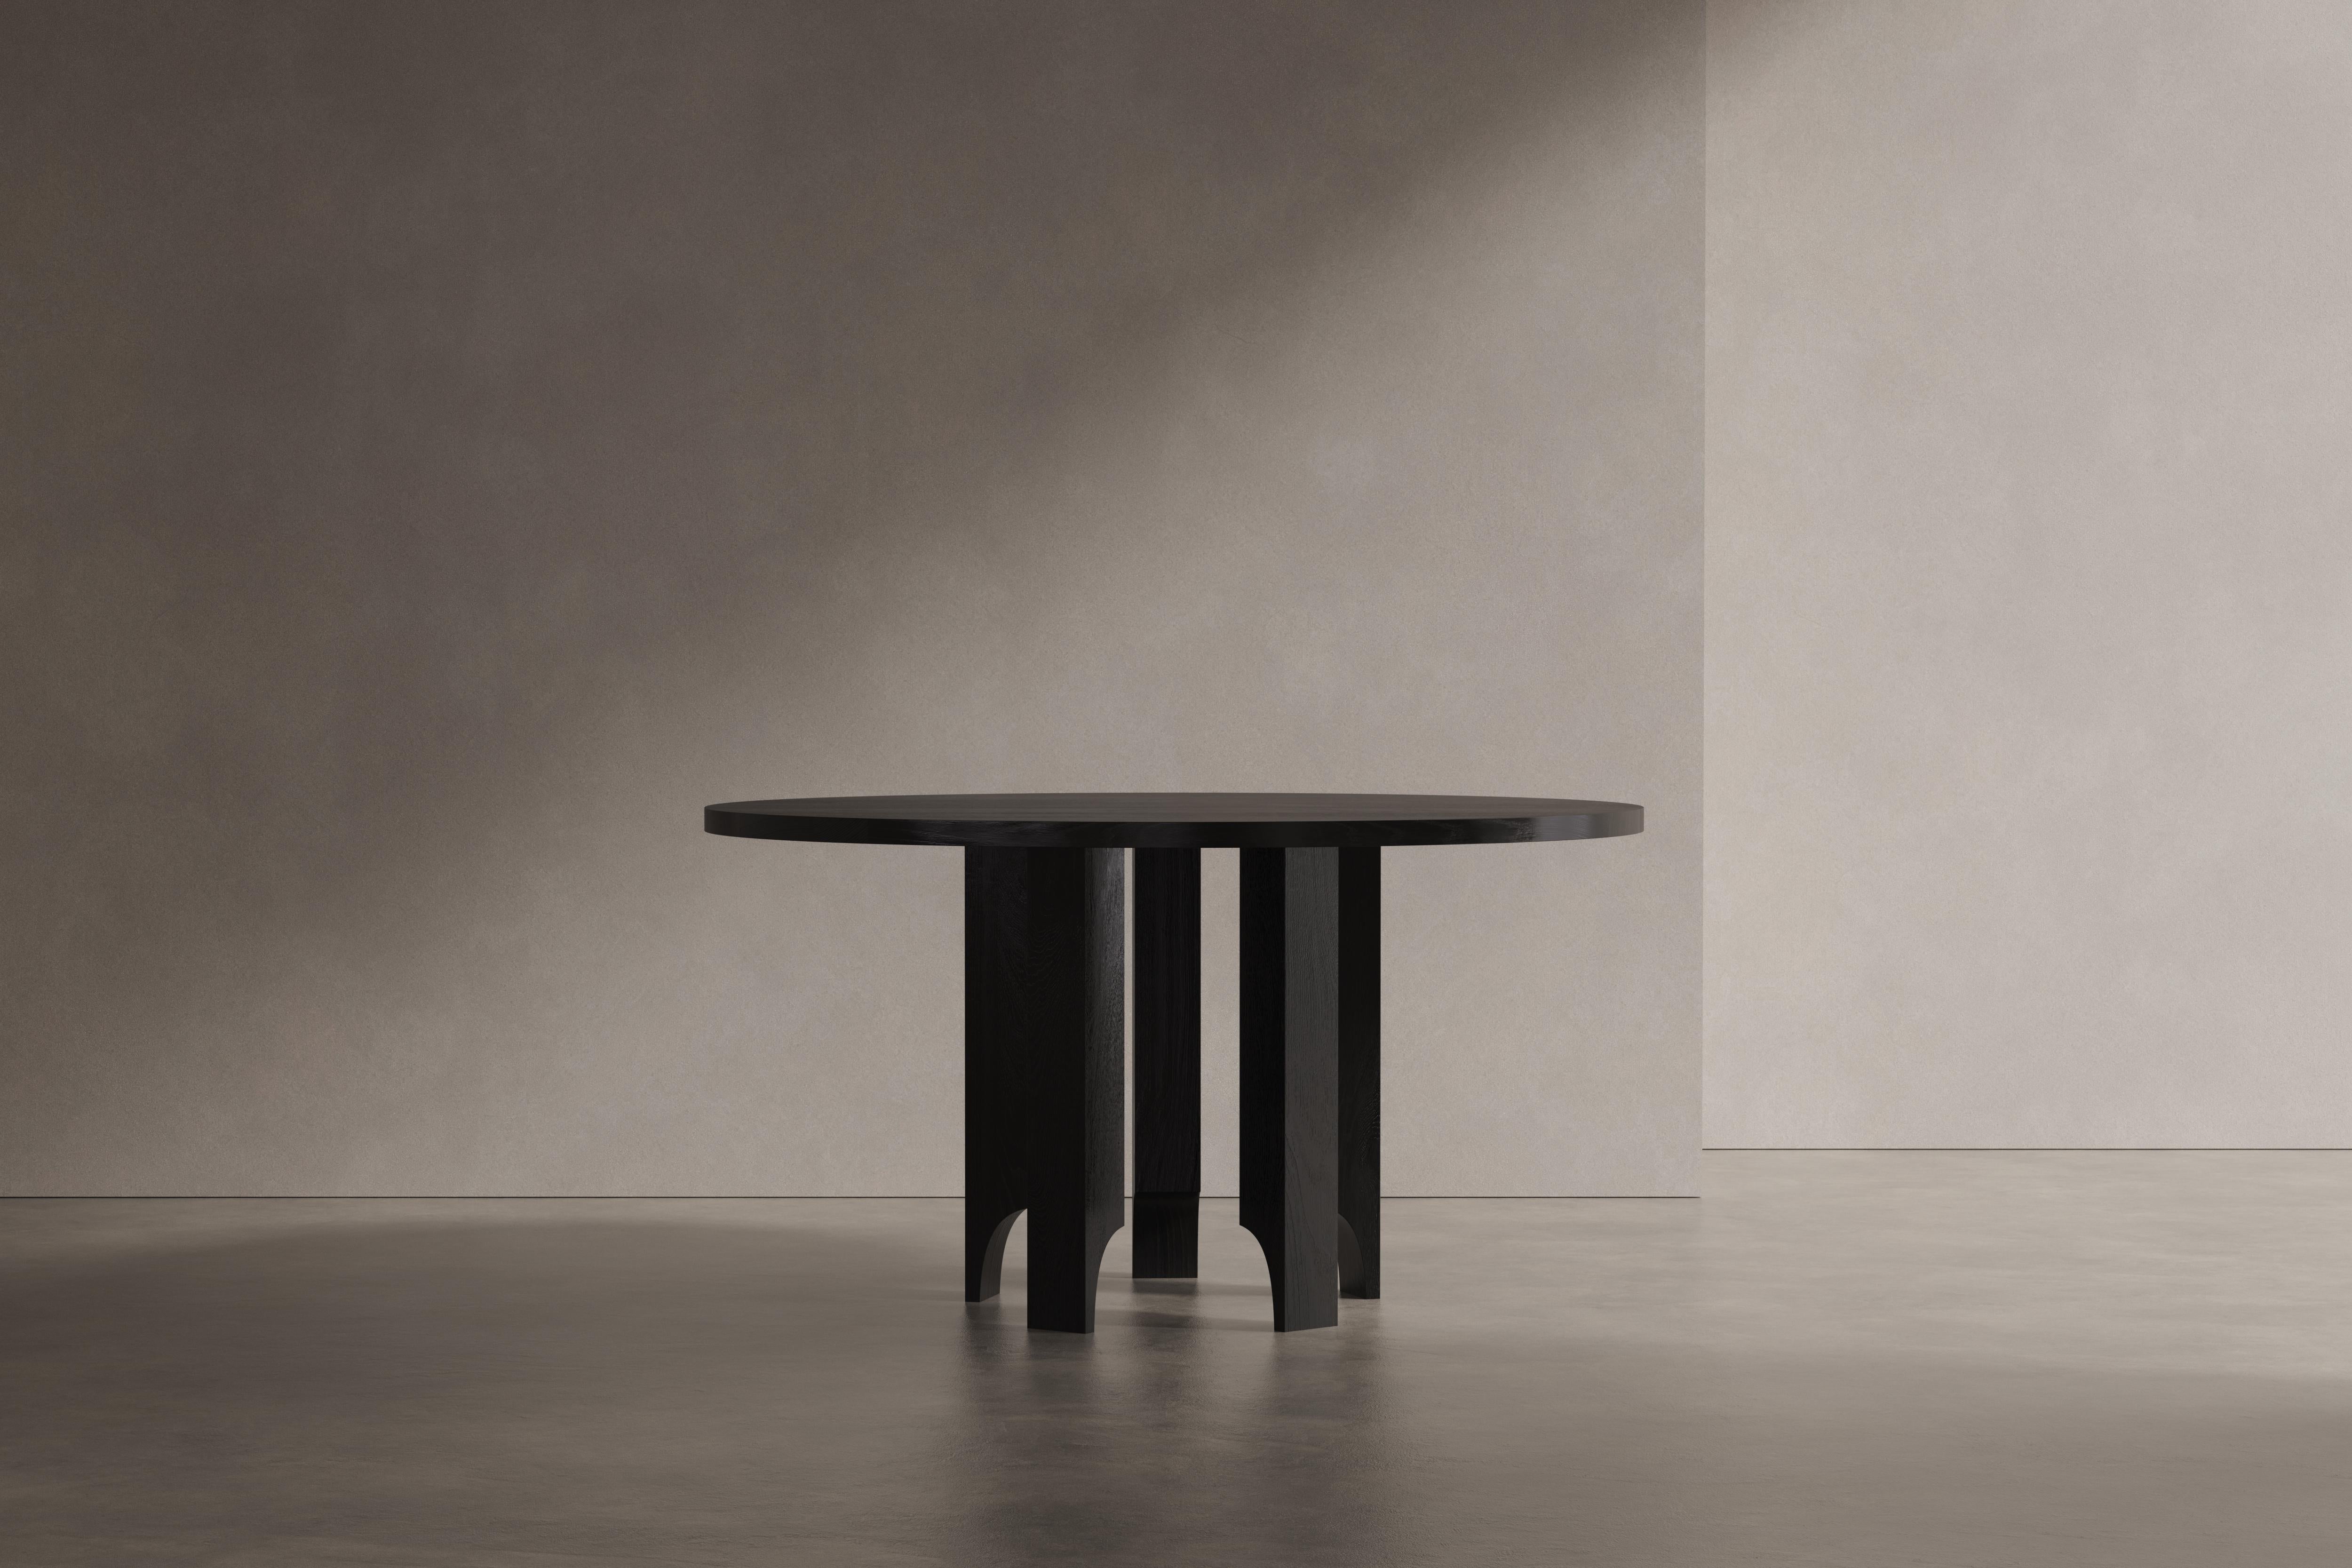 Apporter de la légèreté et de l'Eleg à ses matériaux et formes lourdes. La table Acer est un jeu d'équilibre entre ses volumes lourds et solides et ses pieds légers et pointus qui présentent des vides semi-arqués. Conçue par Aad Bos et fabriquée aux